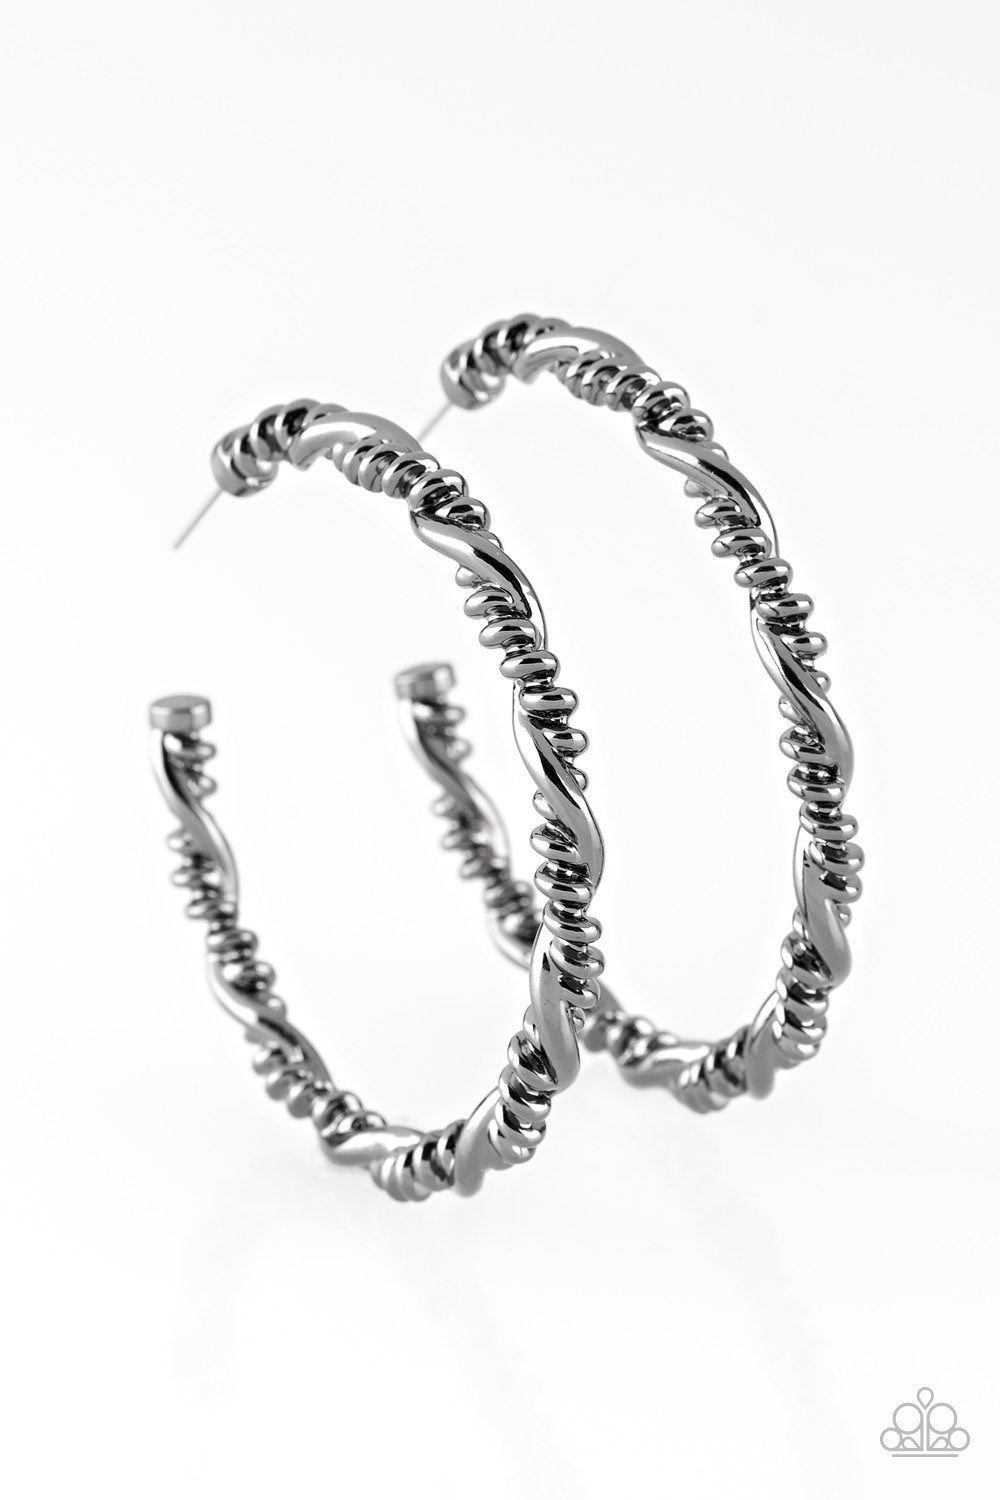 Paparazzi Street Mod - Black Gunmetal - Hoop Earrings - $5 Jewelry With Ashley Swint